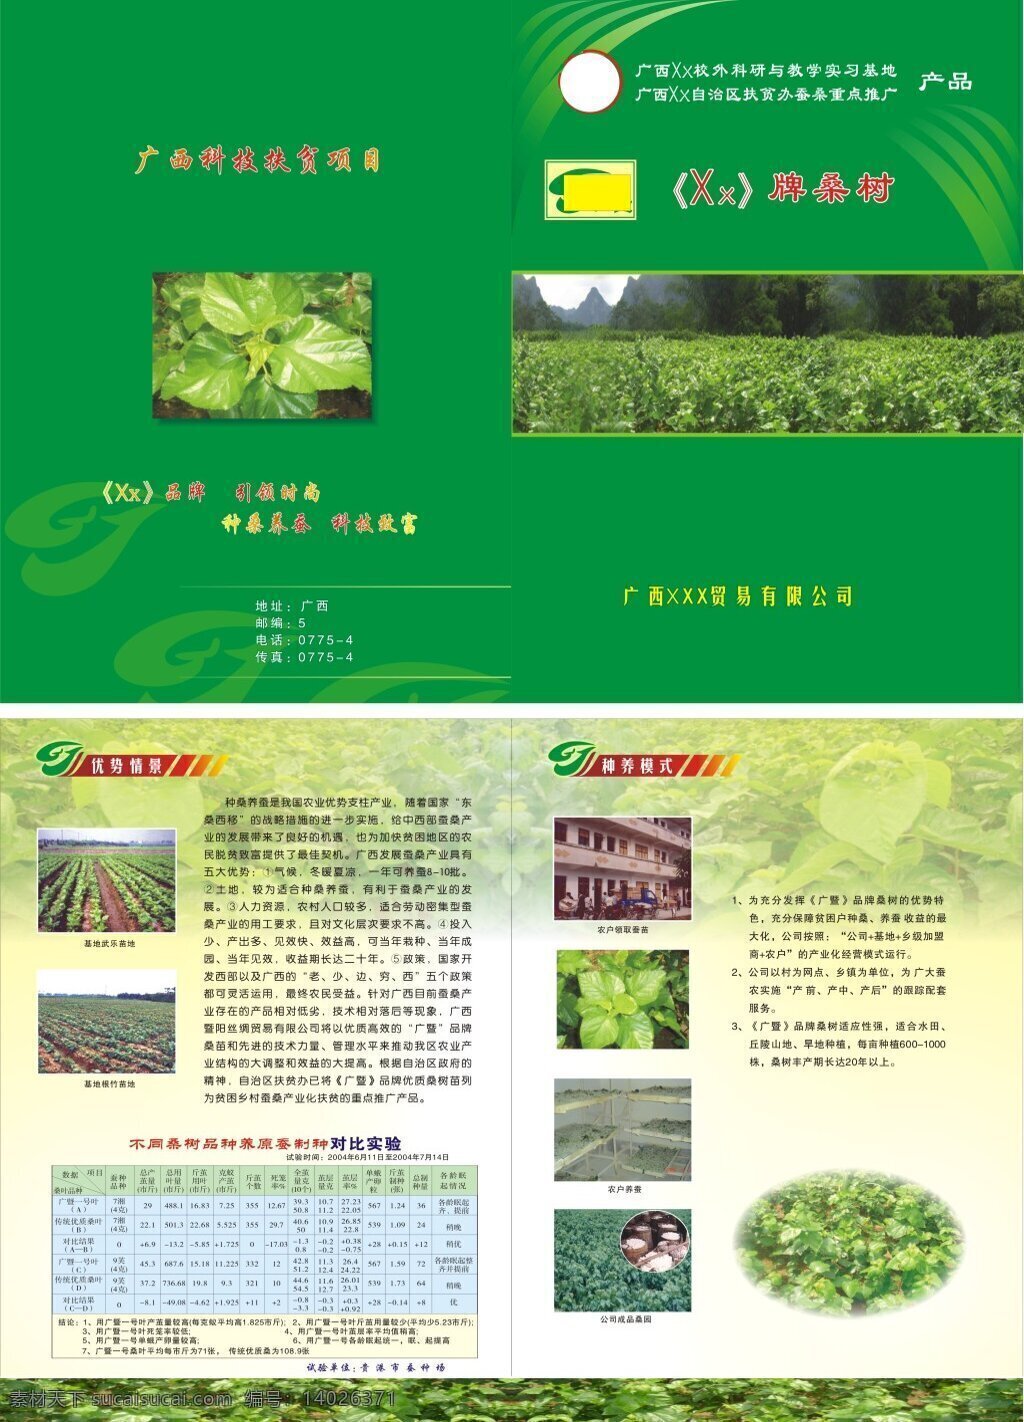 桑树宣传册 蚕种 桑树 桑树宣传单 绿色封面 桑树宣传封面